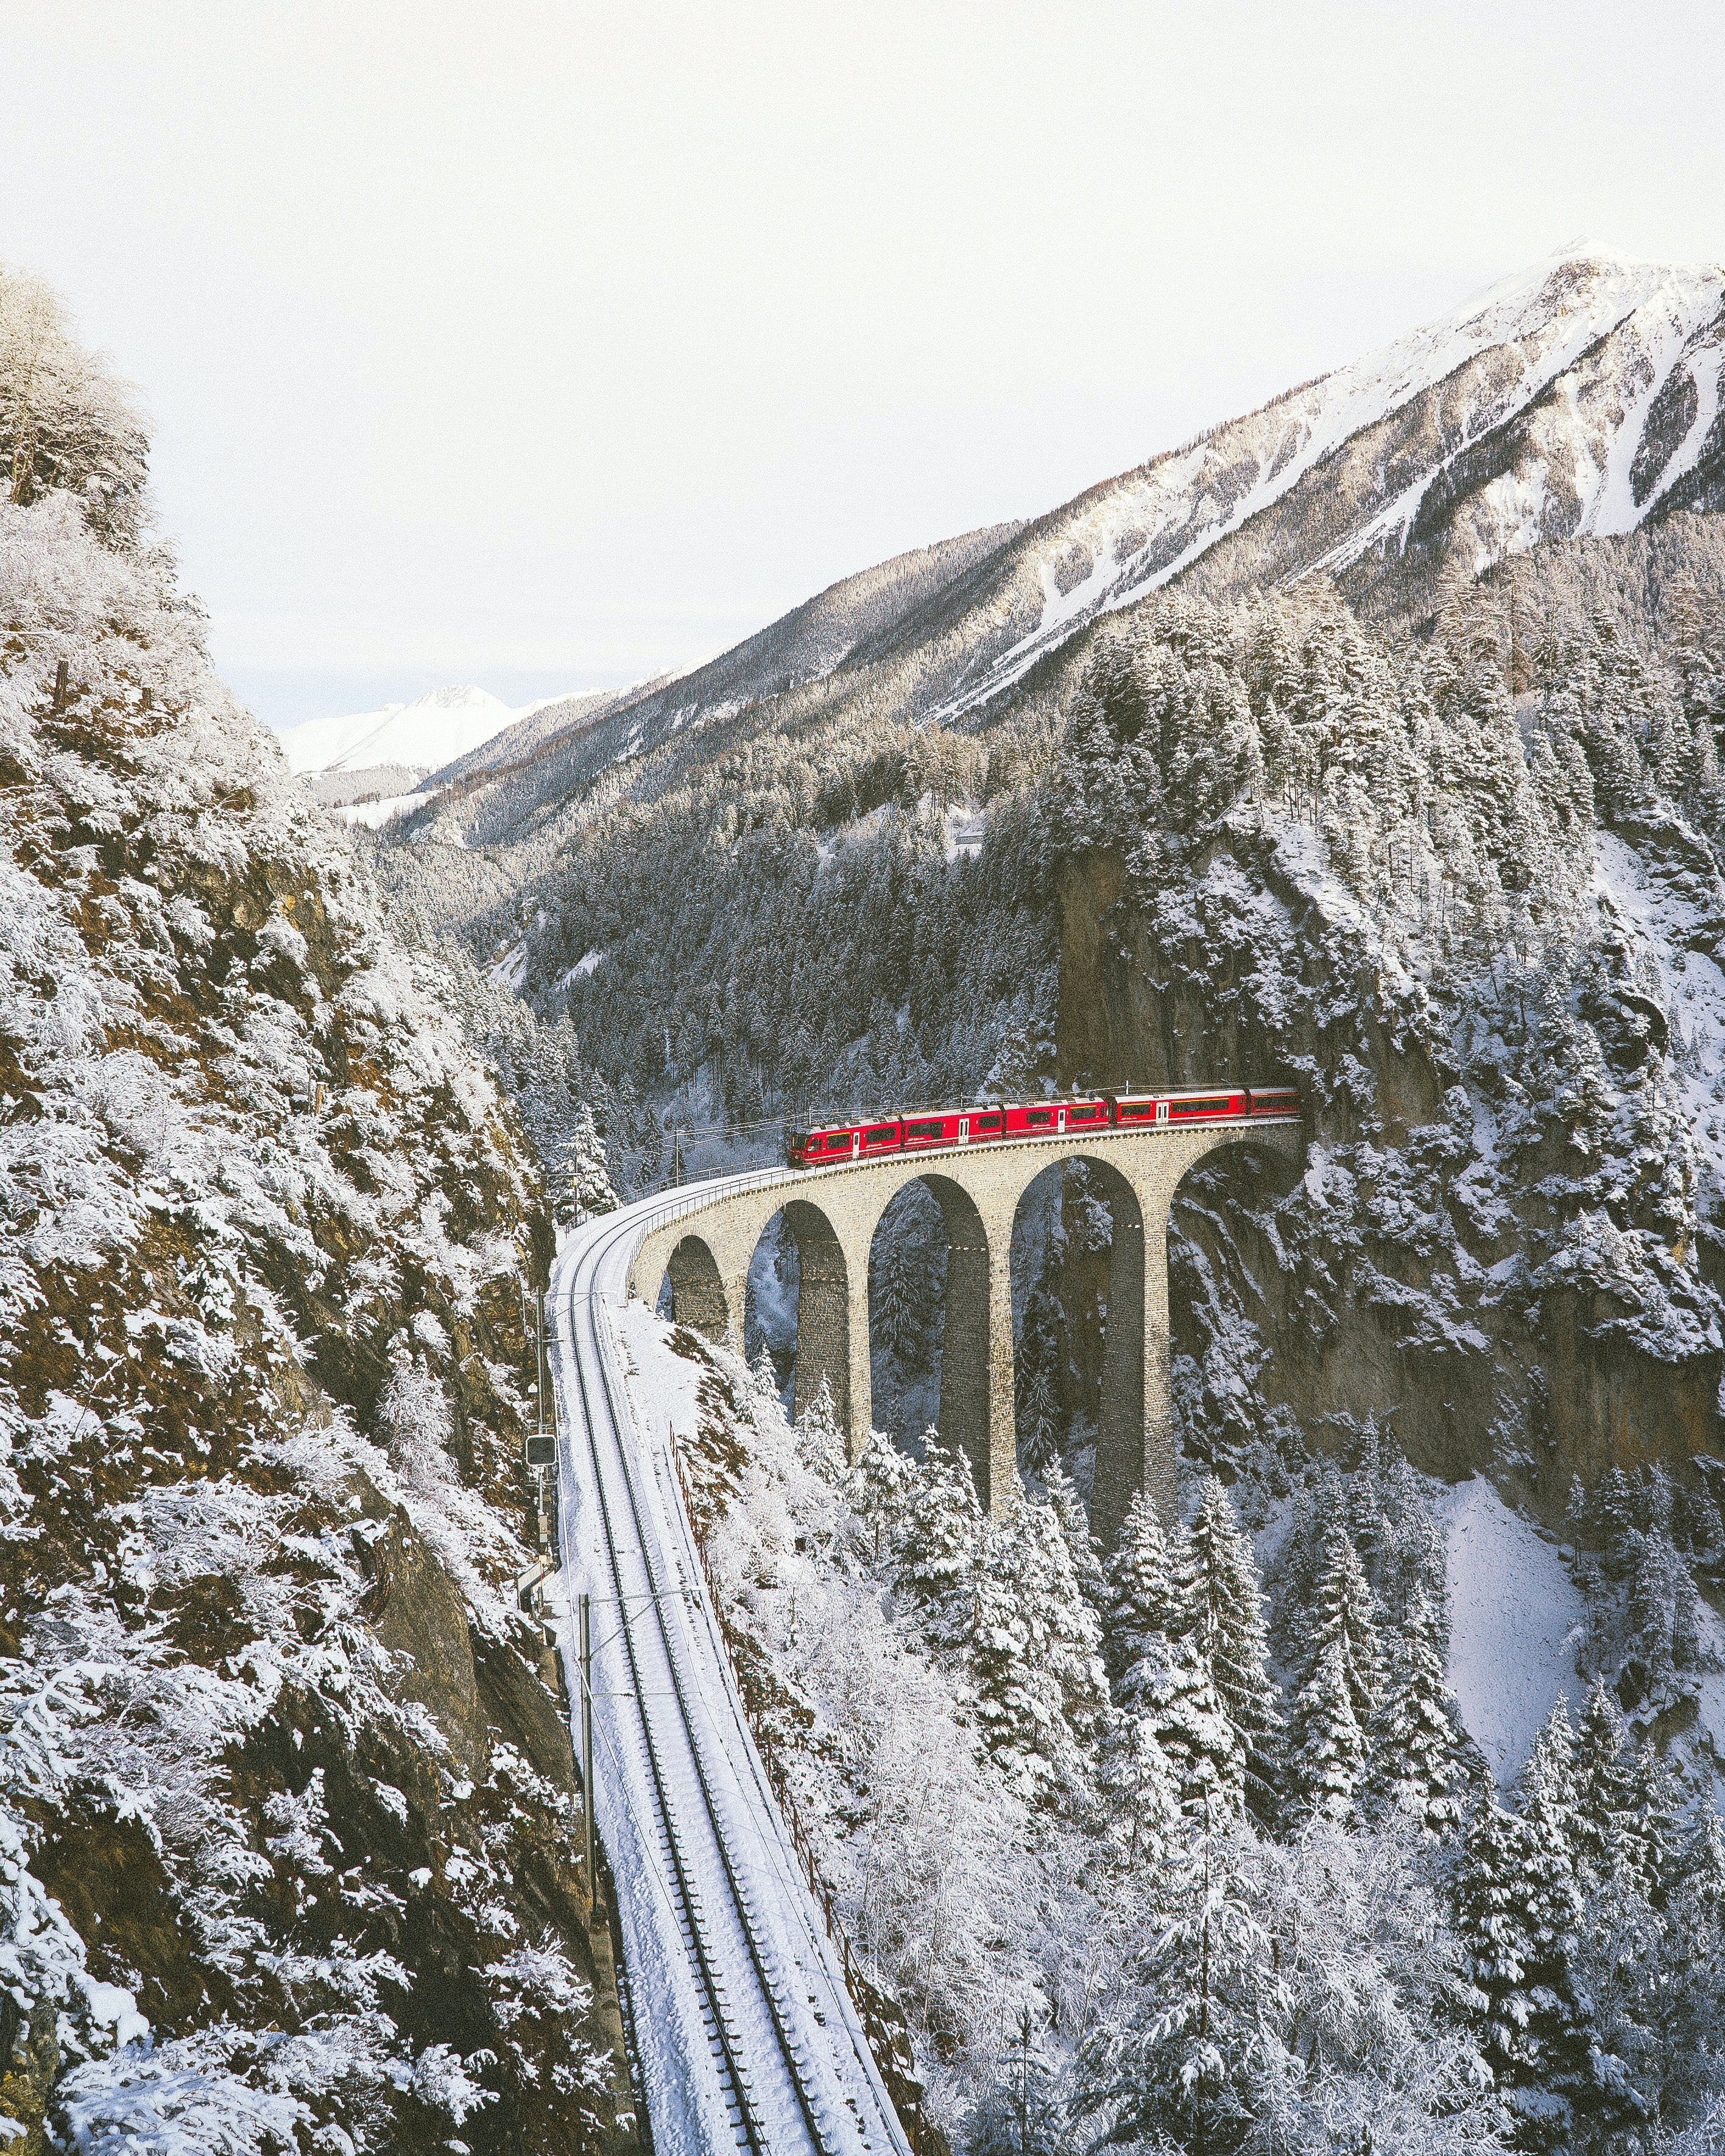 Paesaggio svizzero sotto la neve con un treno che passa sul viadotto in mezzo alle montagne. Foto di Johannes Hofmann